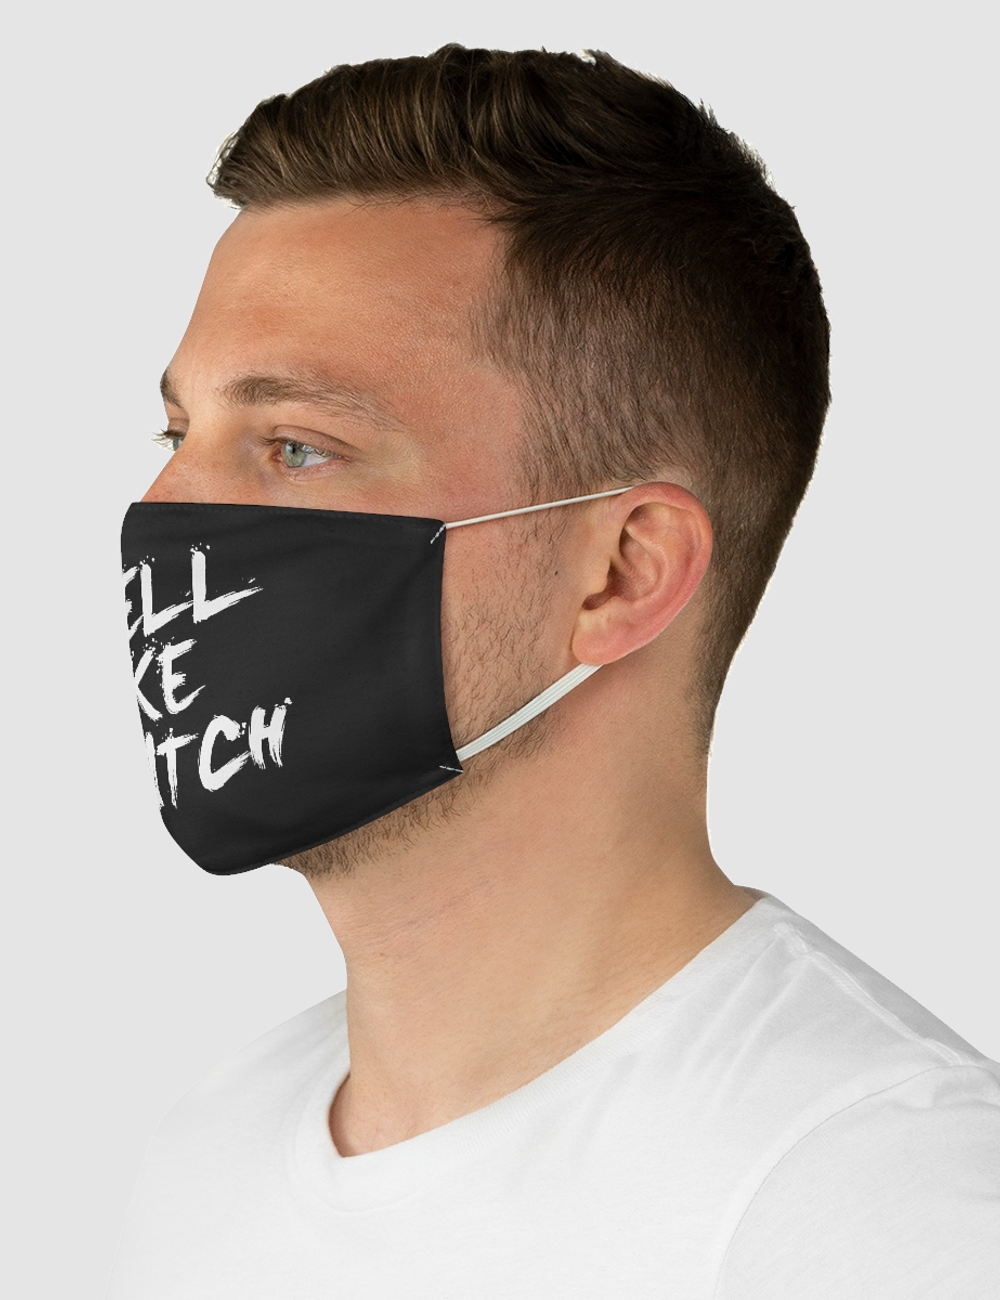 Smell Like A Bitch | Fabric Face Mask OniTakai